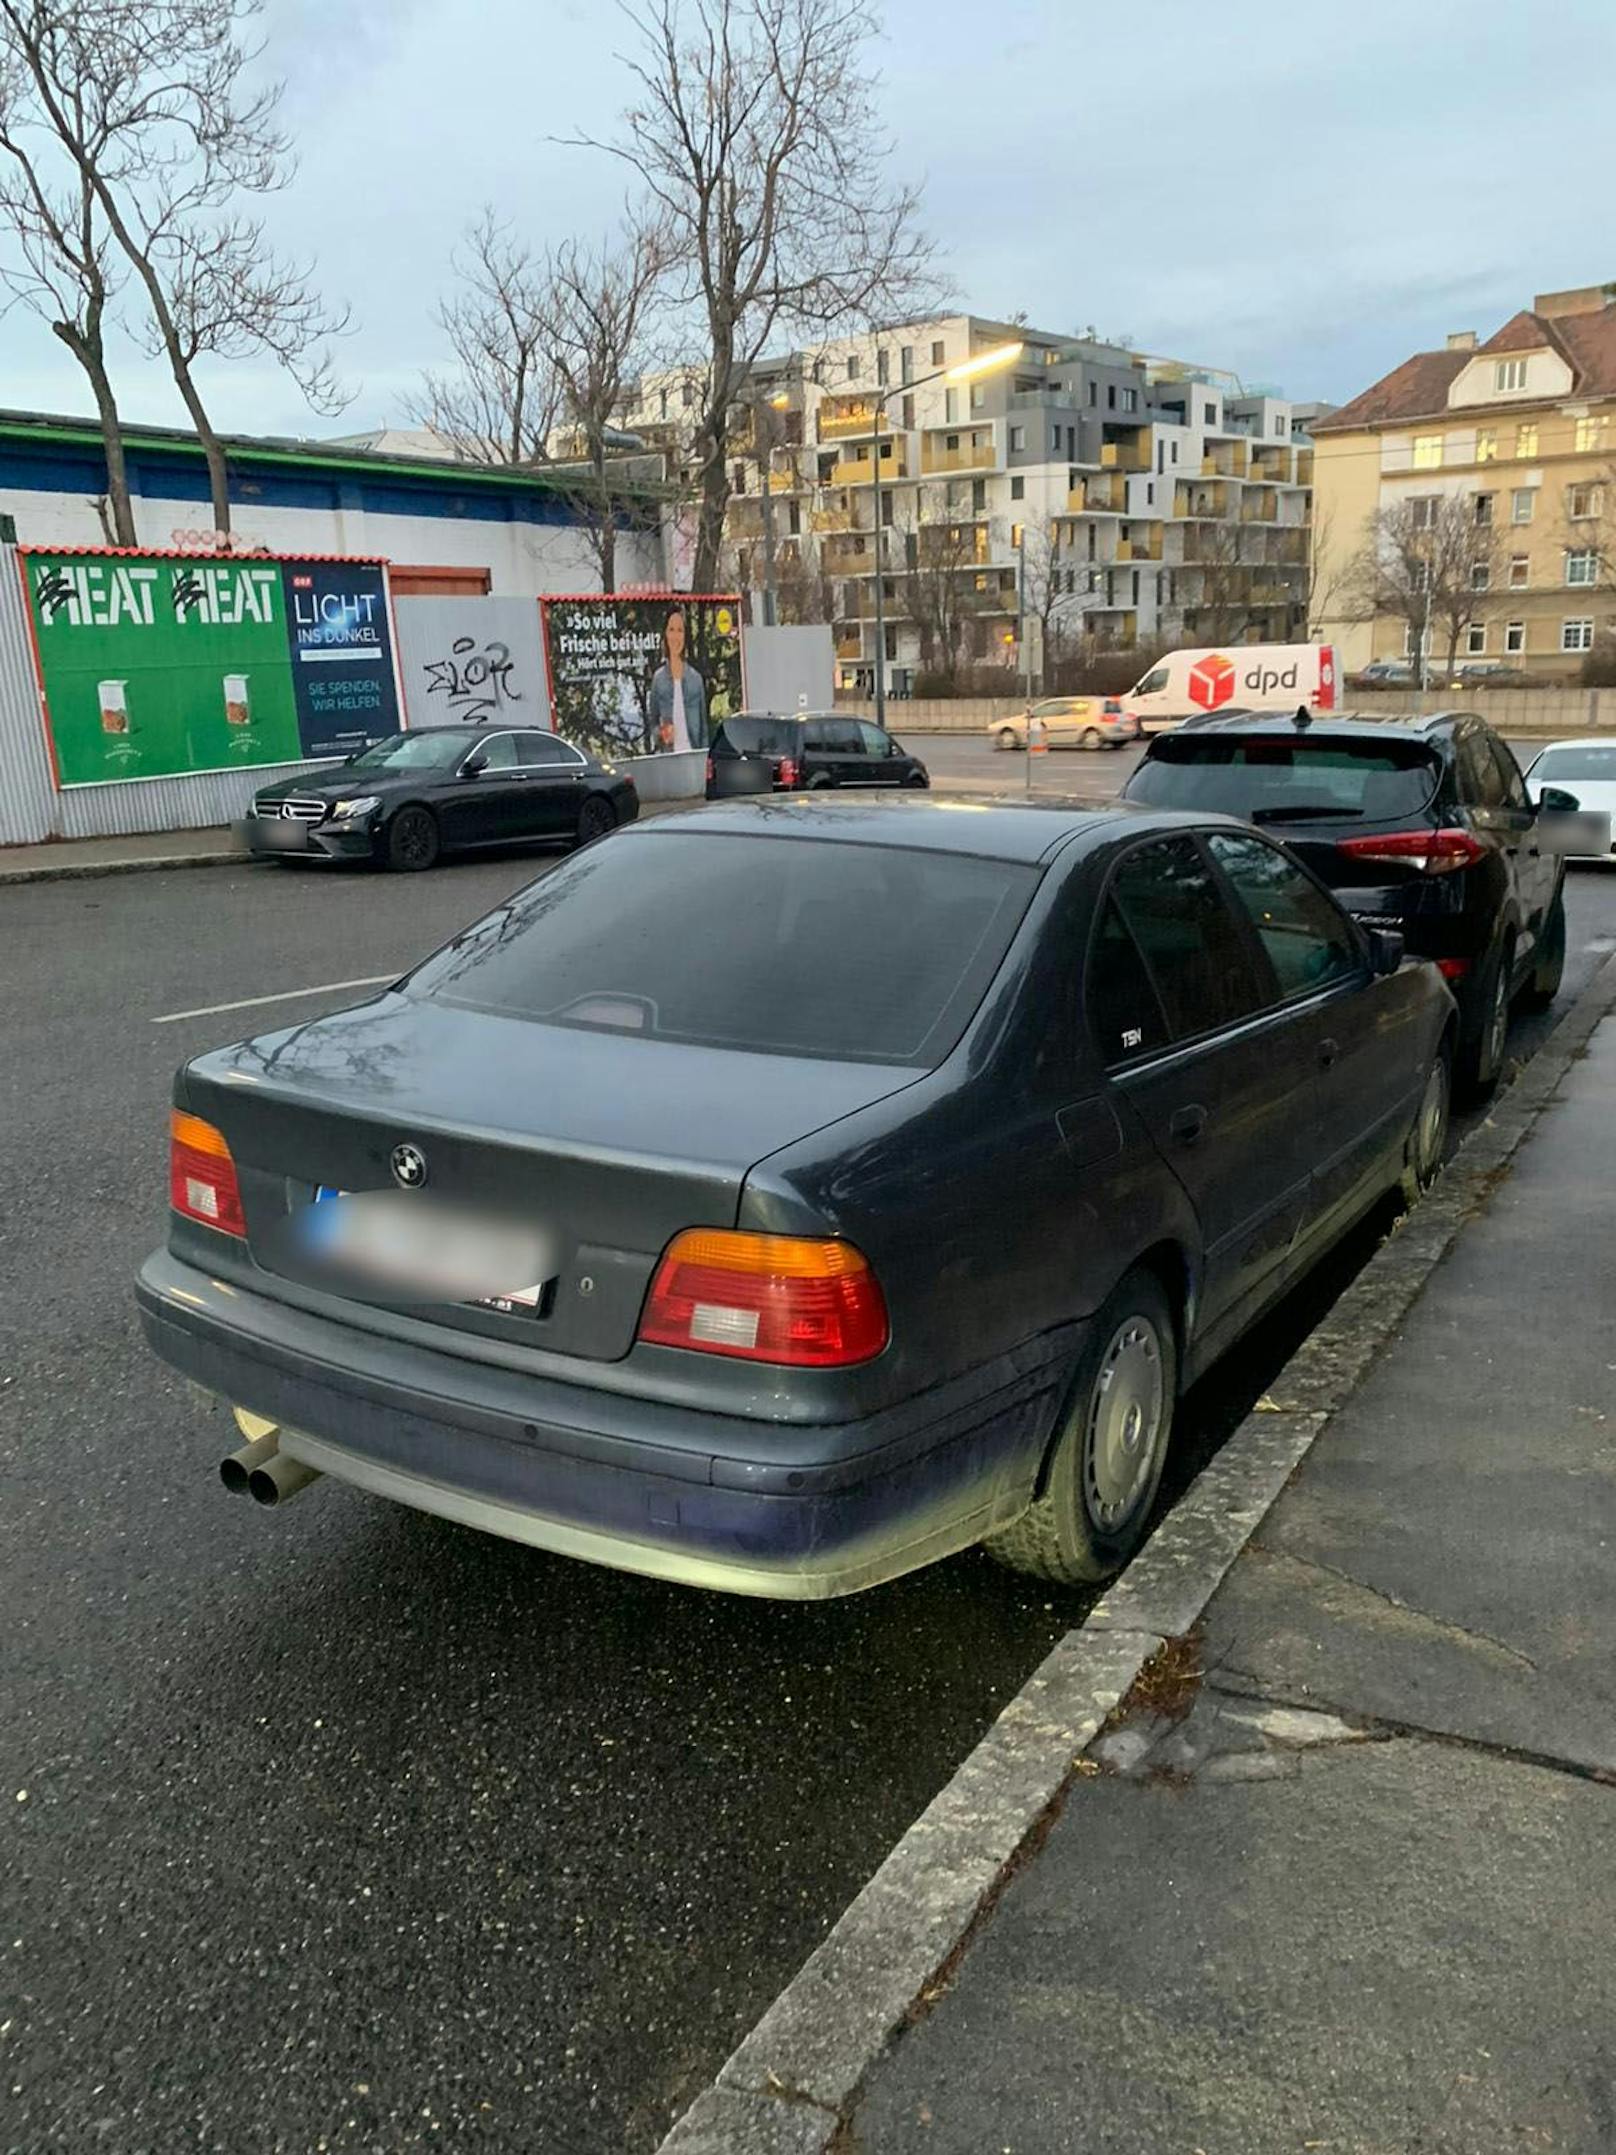 Der BMW wurde kurze Zeit später gefunden. Der Täter flüchtete zu Fuß.